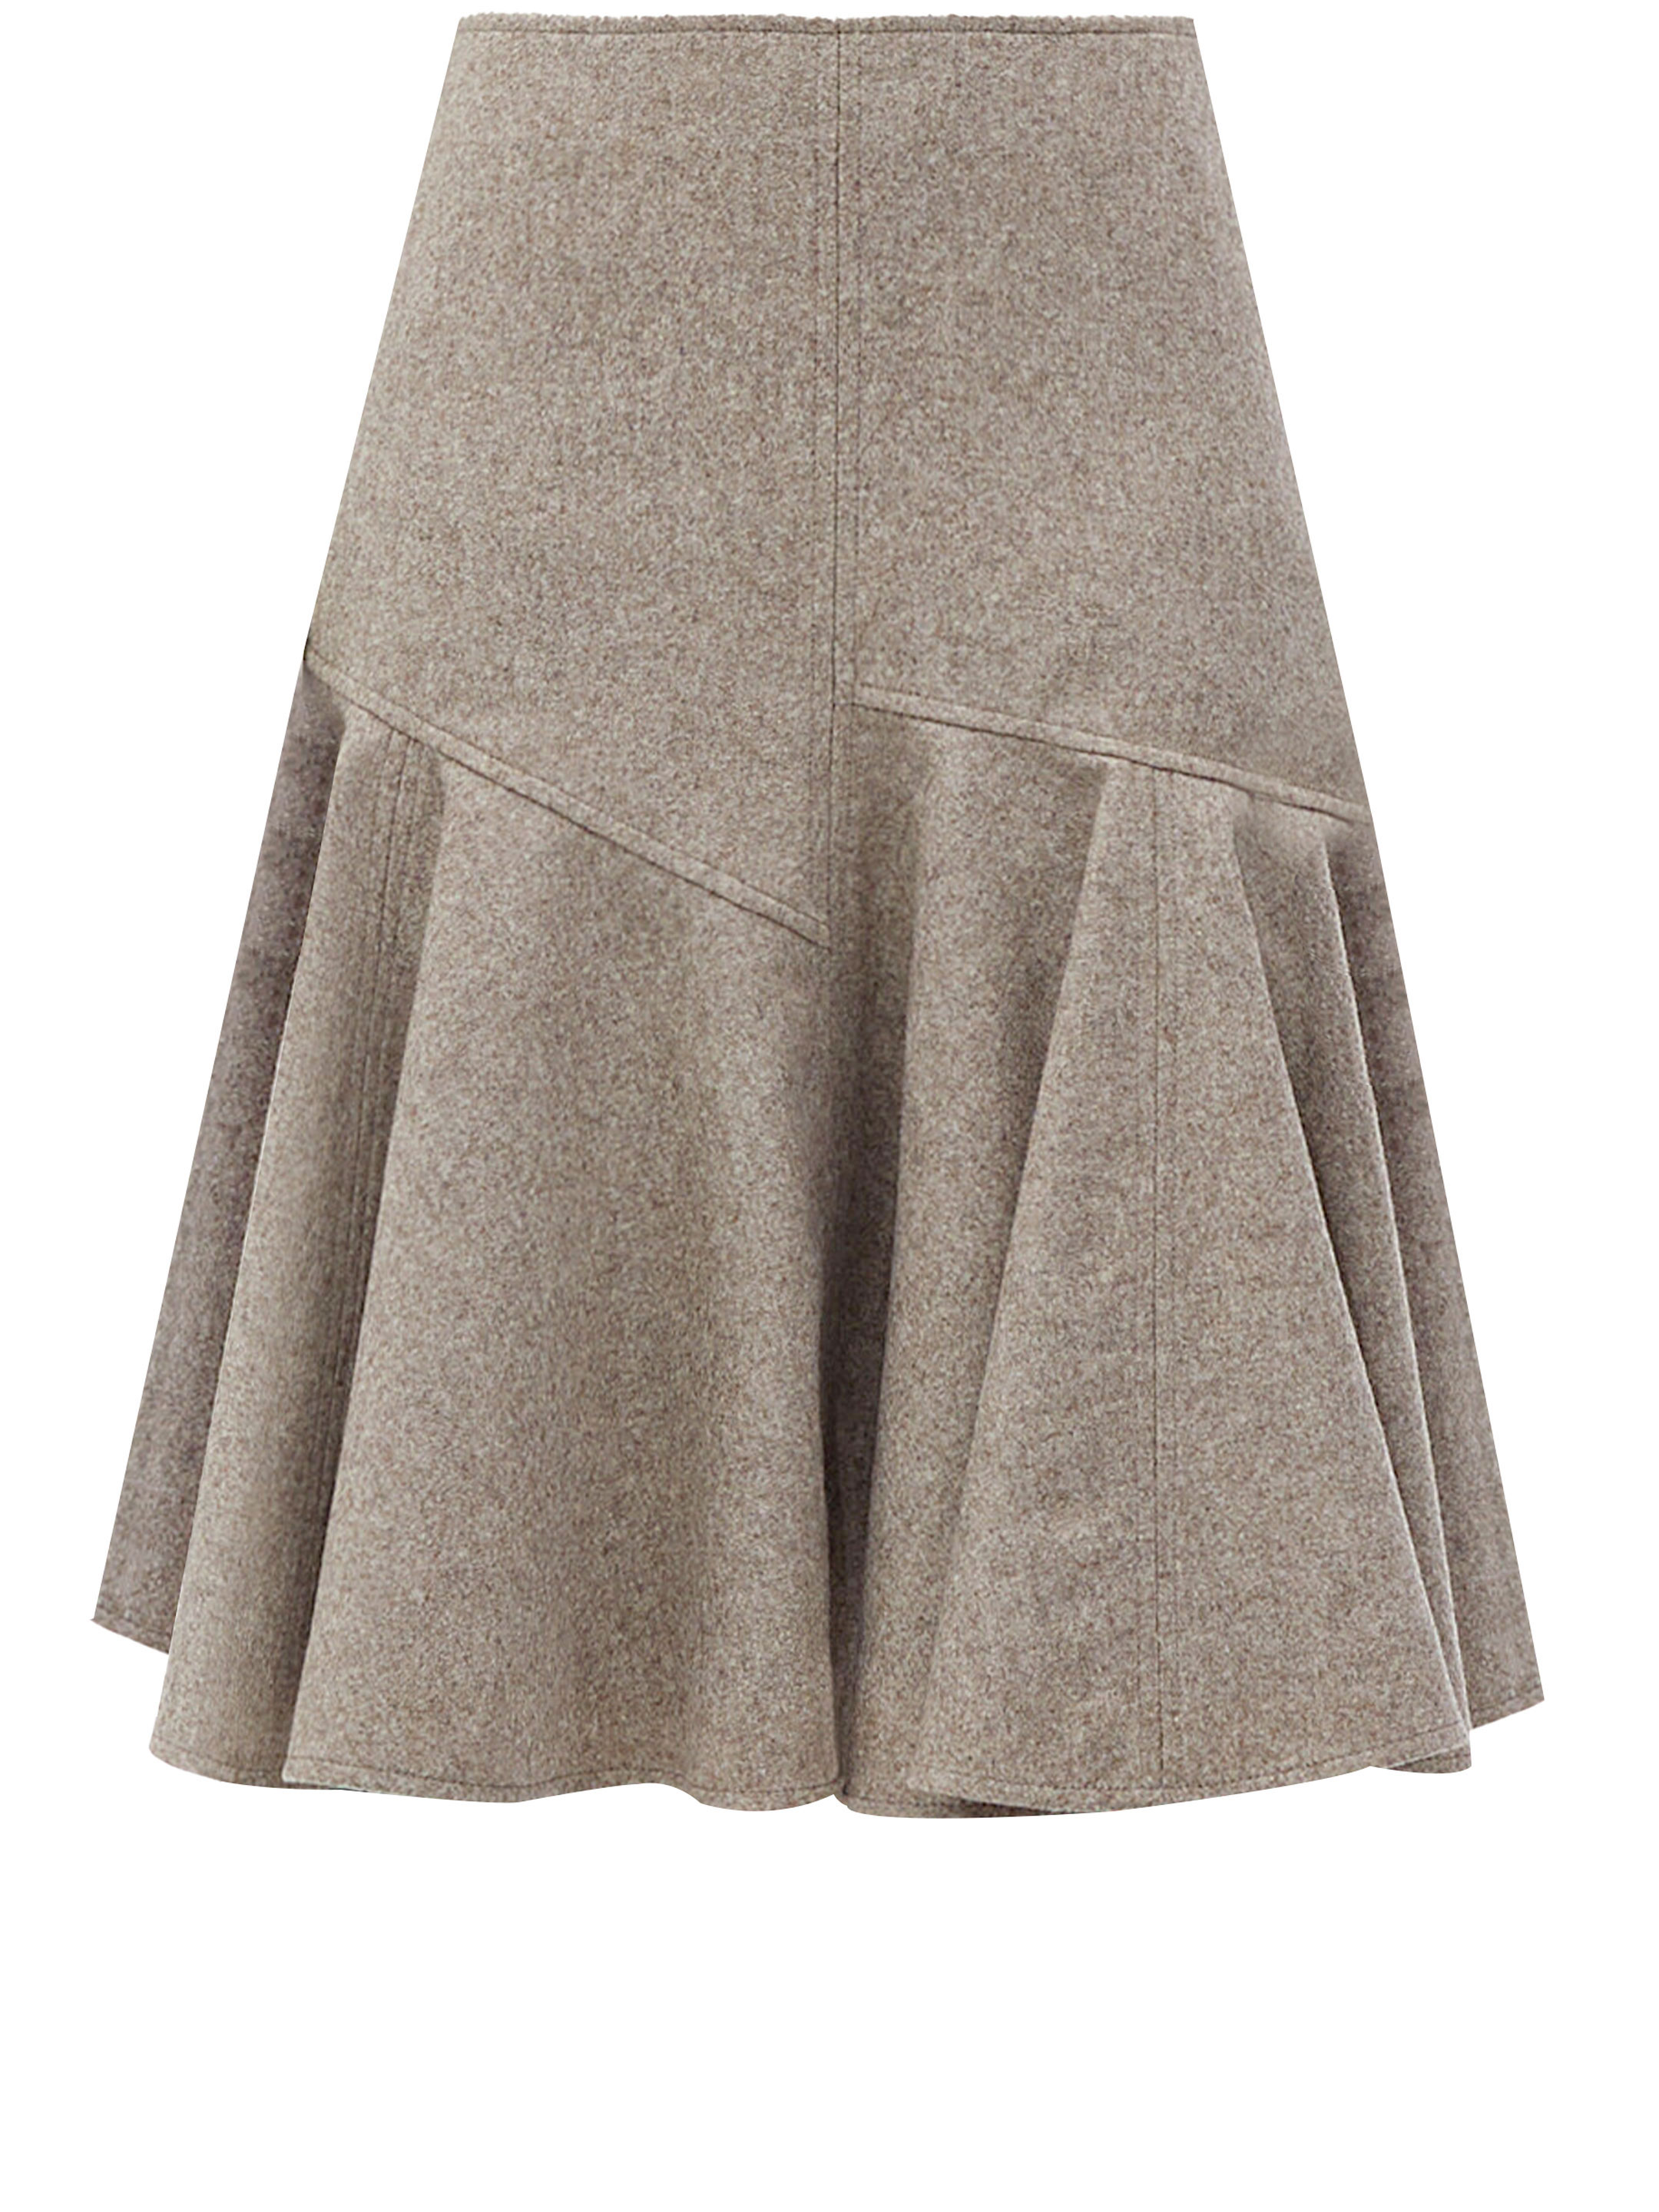 Юбка Bottega Veneta Wool flannel, бежевый юбка с защипами и молнией сзади